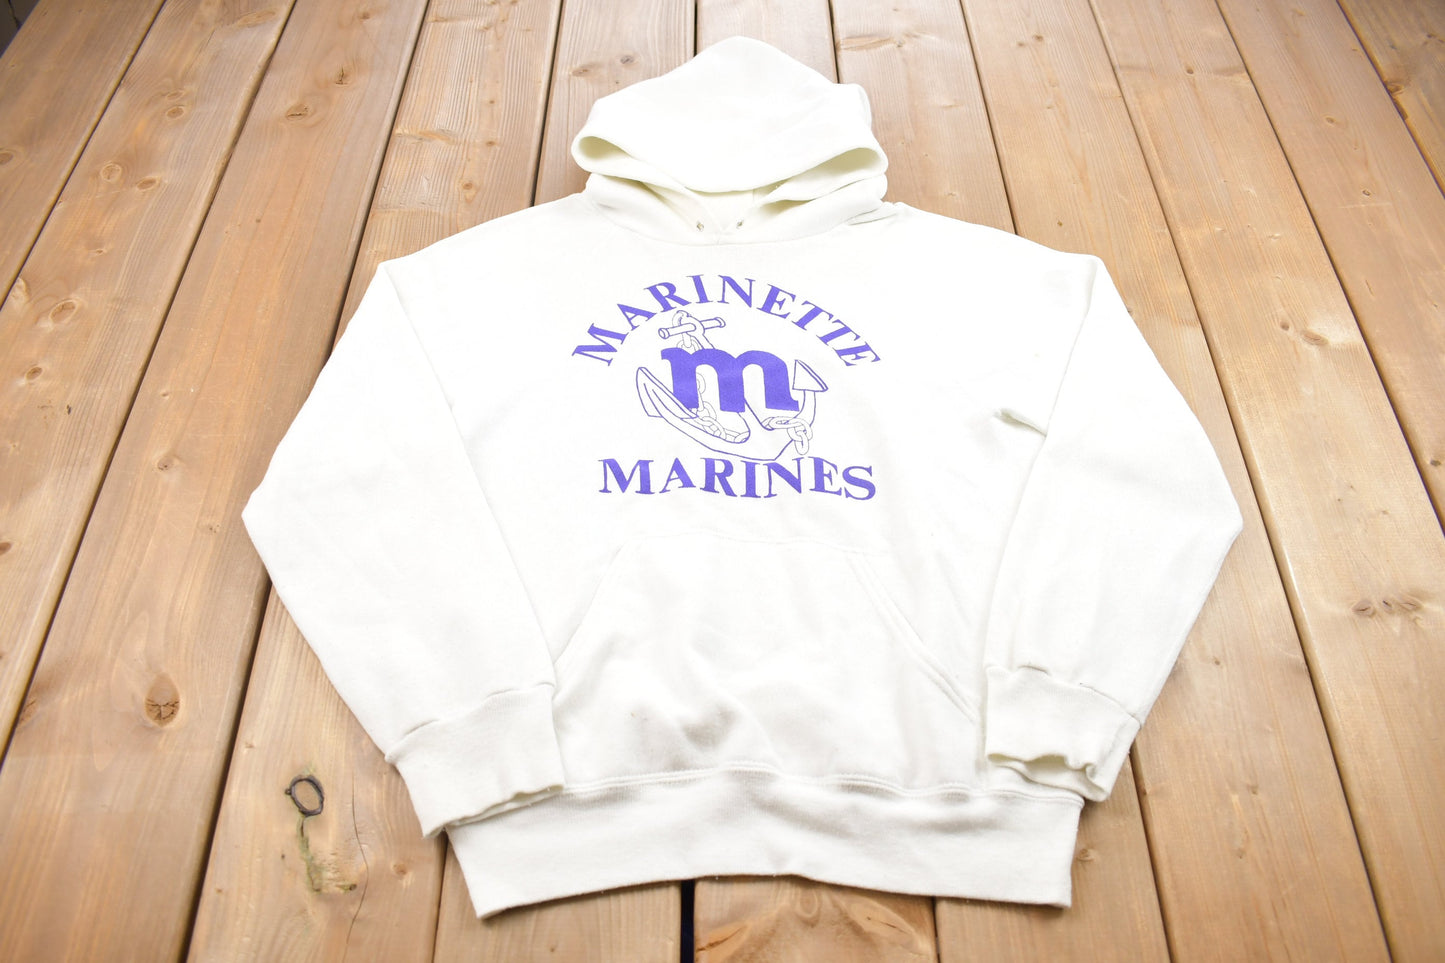 Vintage 1980s Marinette Marines Graphic Hoodie / 80s Hoodie / Stained / Vintage Sweater / Color Block / Varsity Vintage